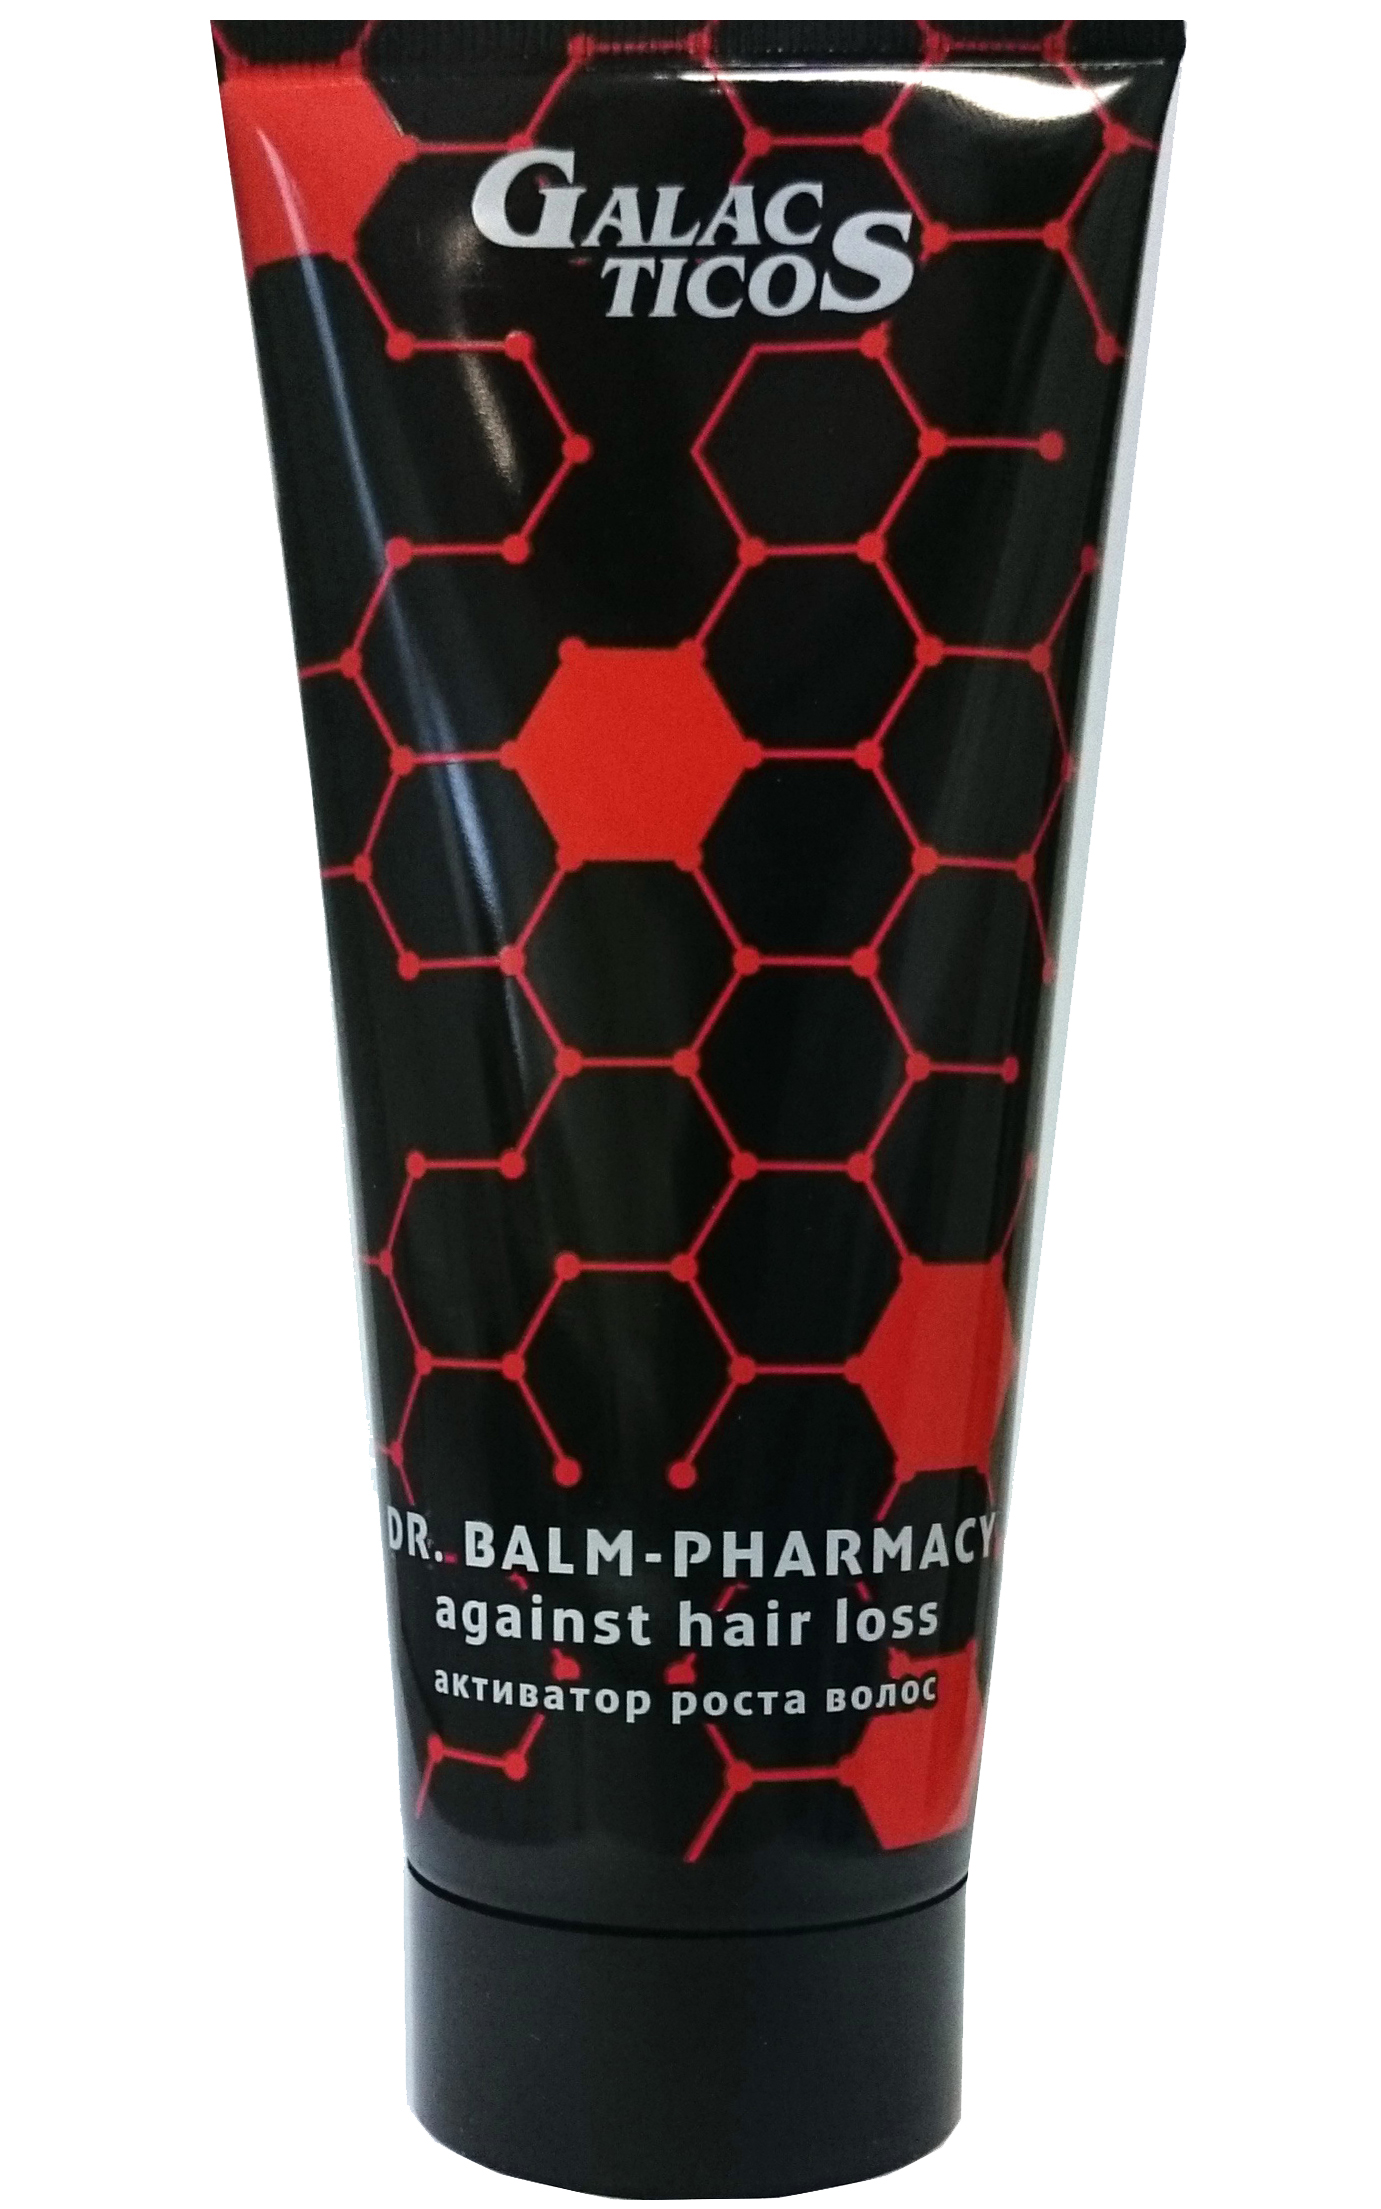 Бальзам-аптека против выпадения и слабости волос "Активатор роста сильных волос", 200 мл. от магазина HairKiss